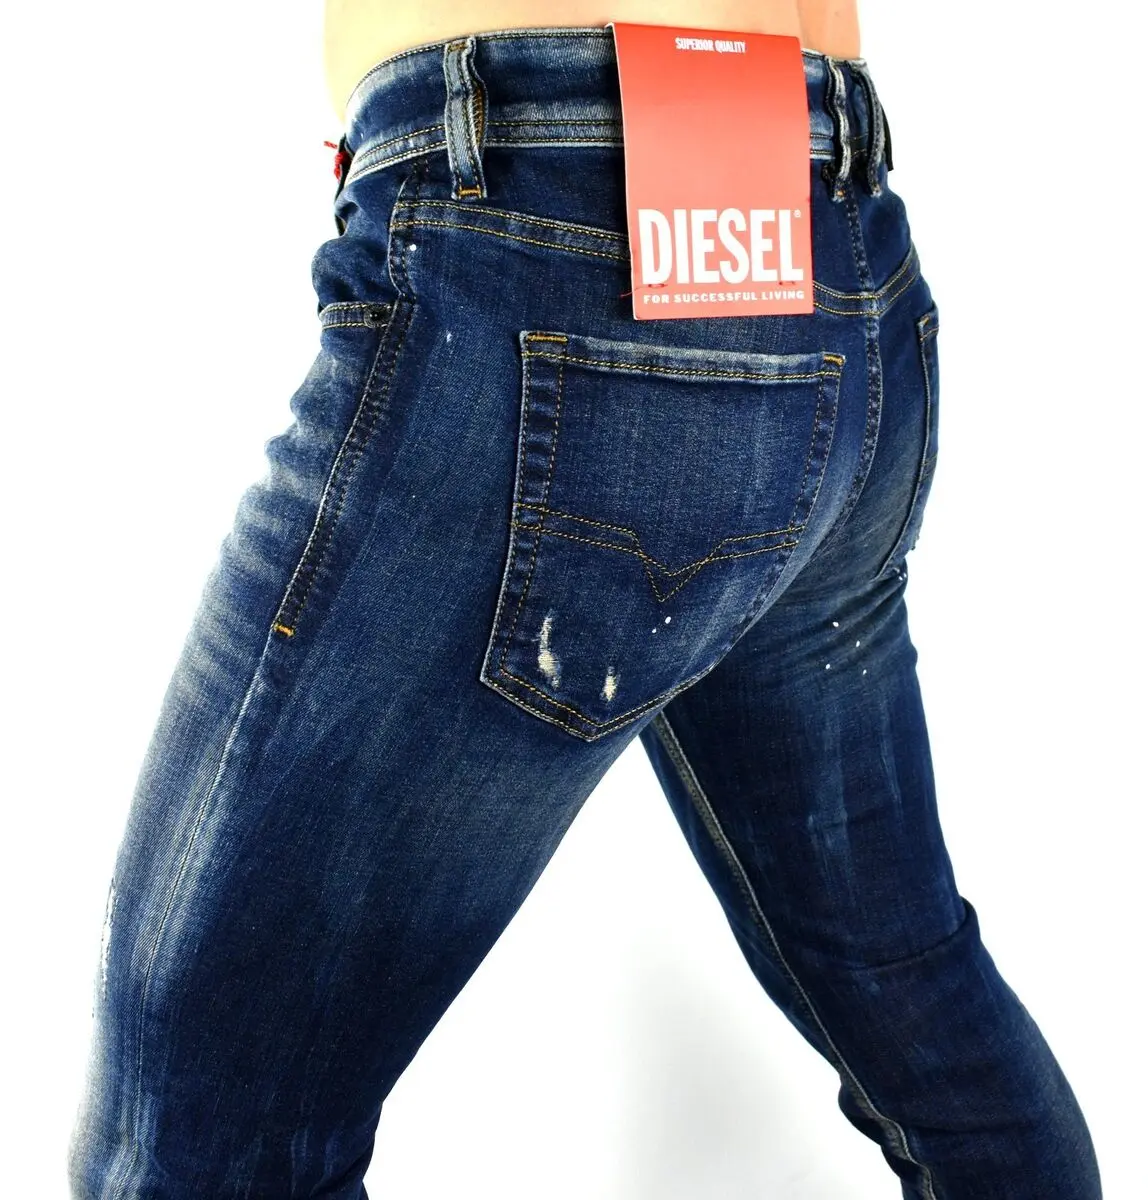 pantalones diesel precio - Dónde se hacen los jeans Diesel